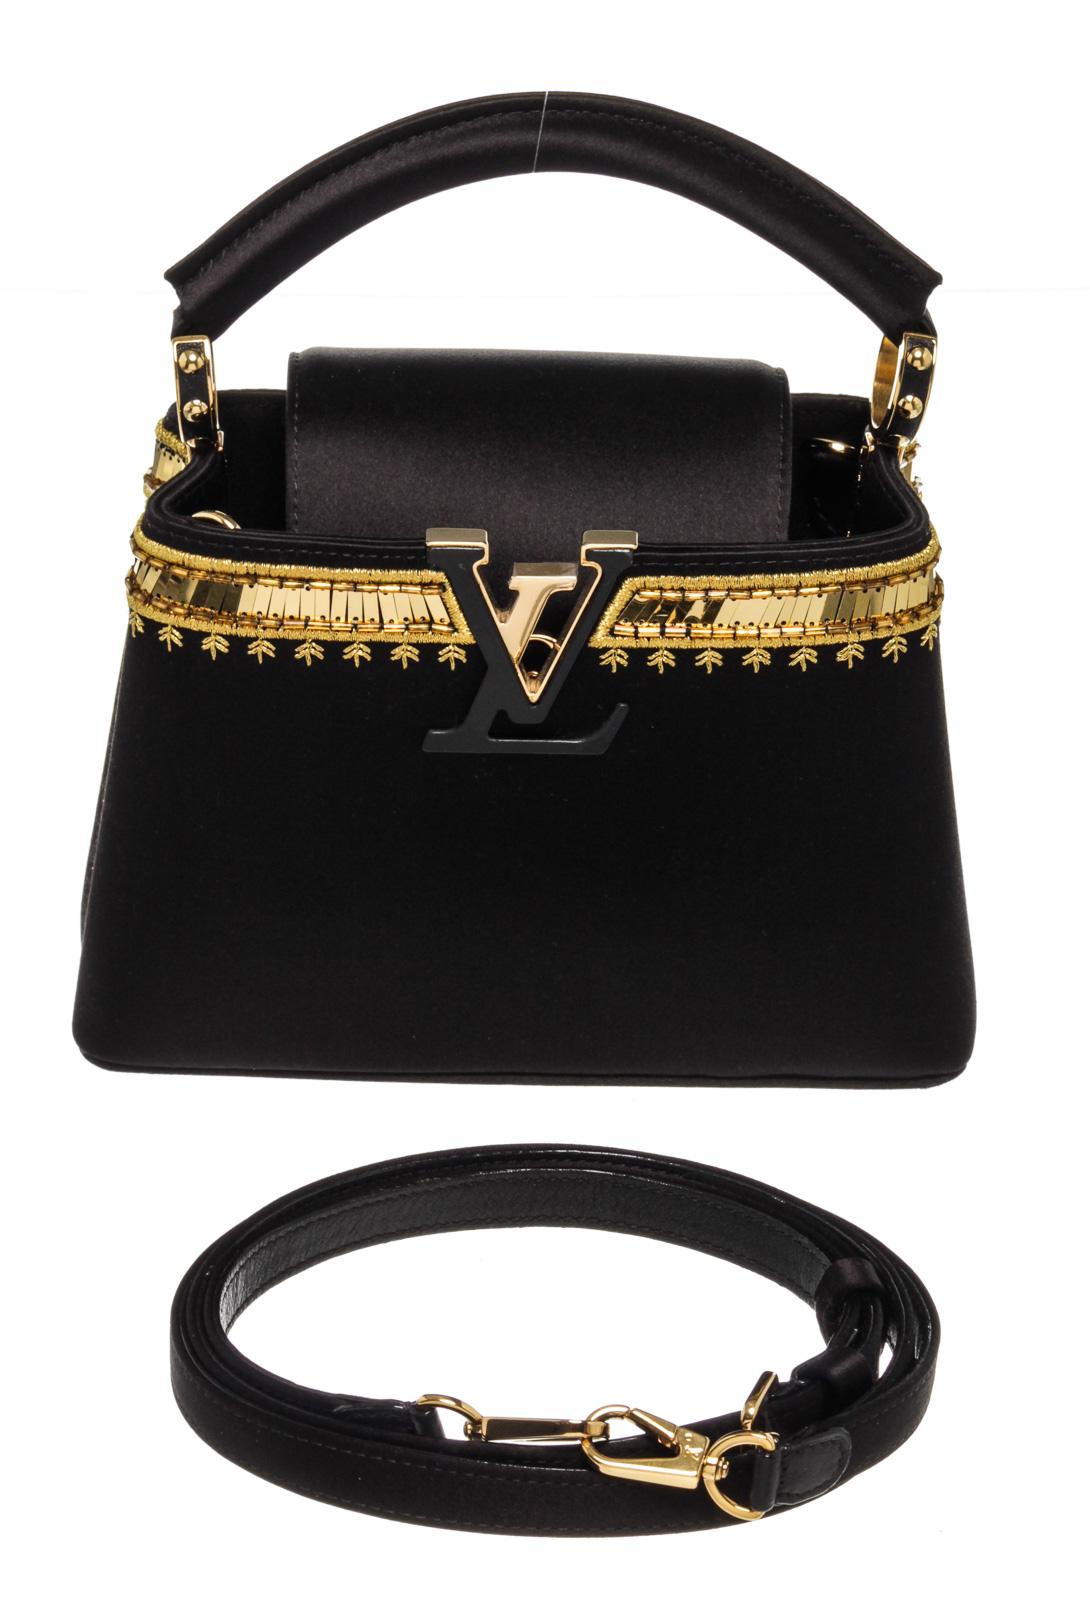 Women's Louis Vuitton Black Leather Capucines Satin Handbag For Sale